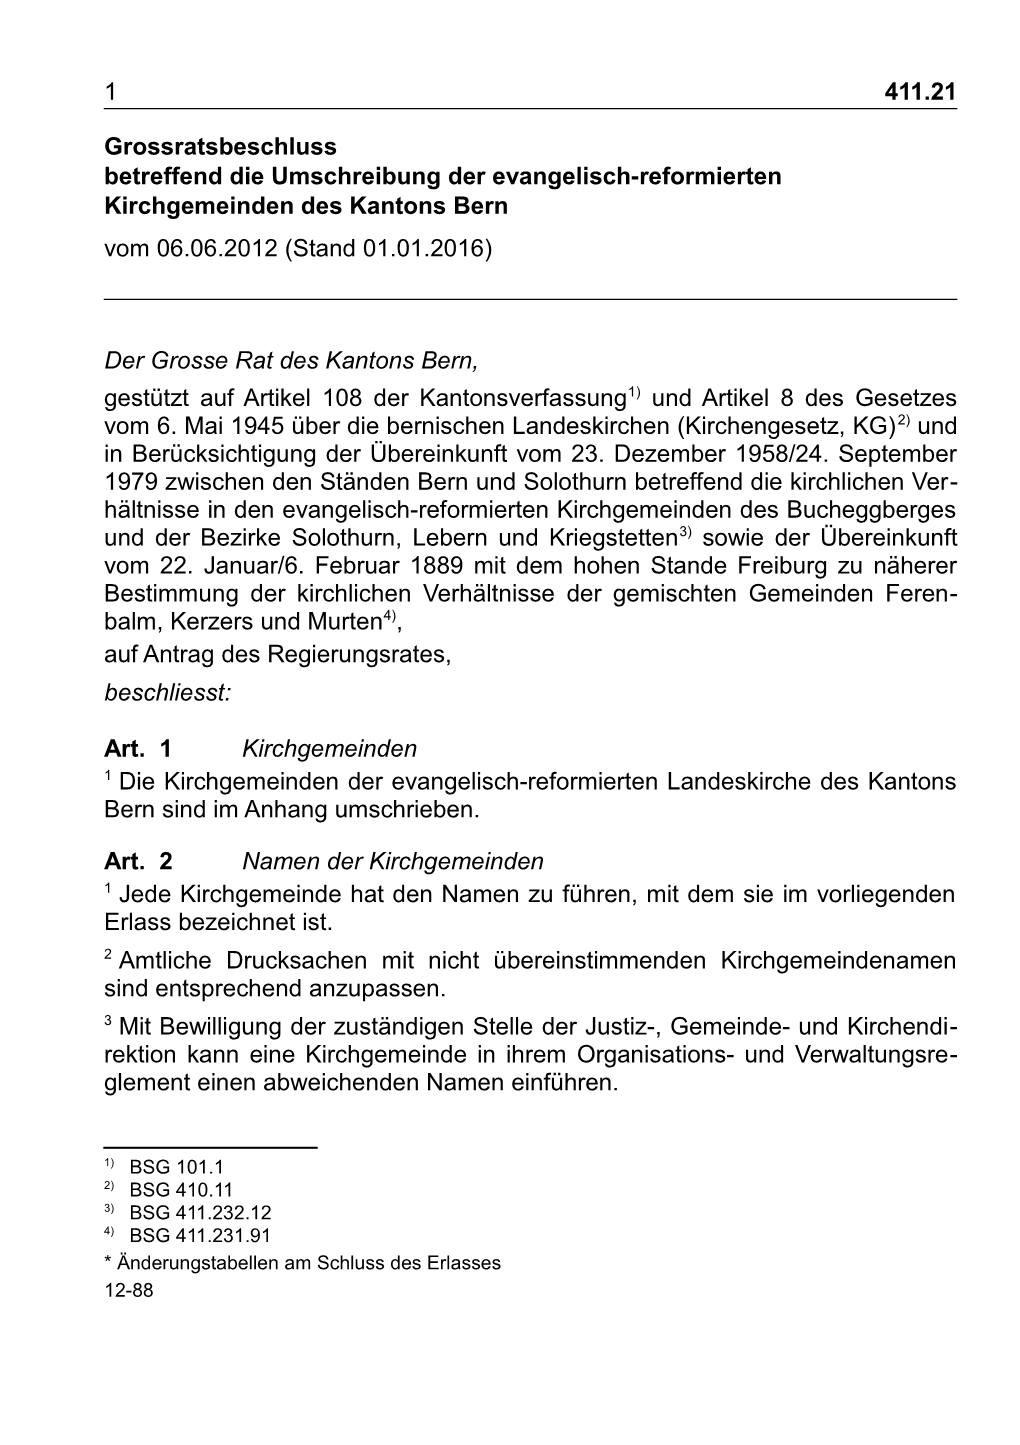 Grossratsbeschluss Betreffend Die Umschreibung Der Evangelisch-Reformierten Kirchgemeinden Des Kantons Bern Vom 06.06.2012 (Stand 01.01.2016)